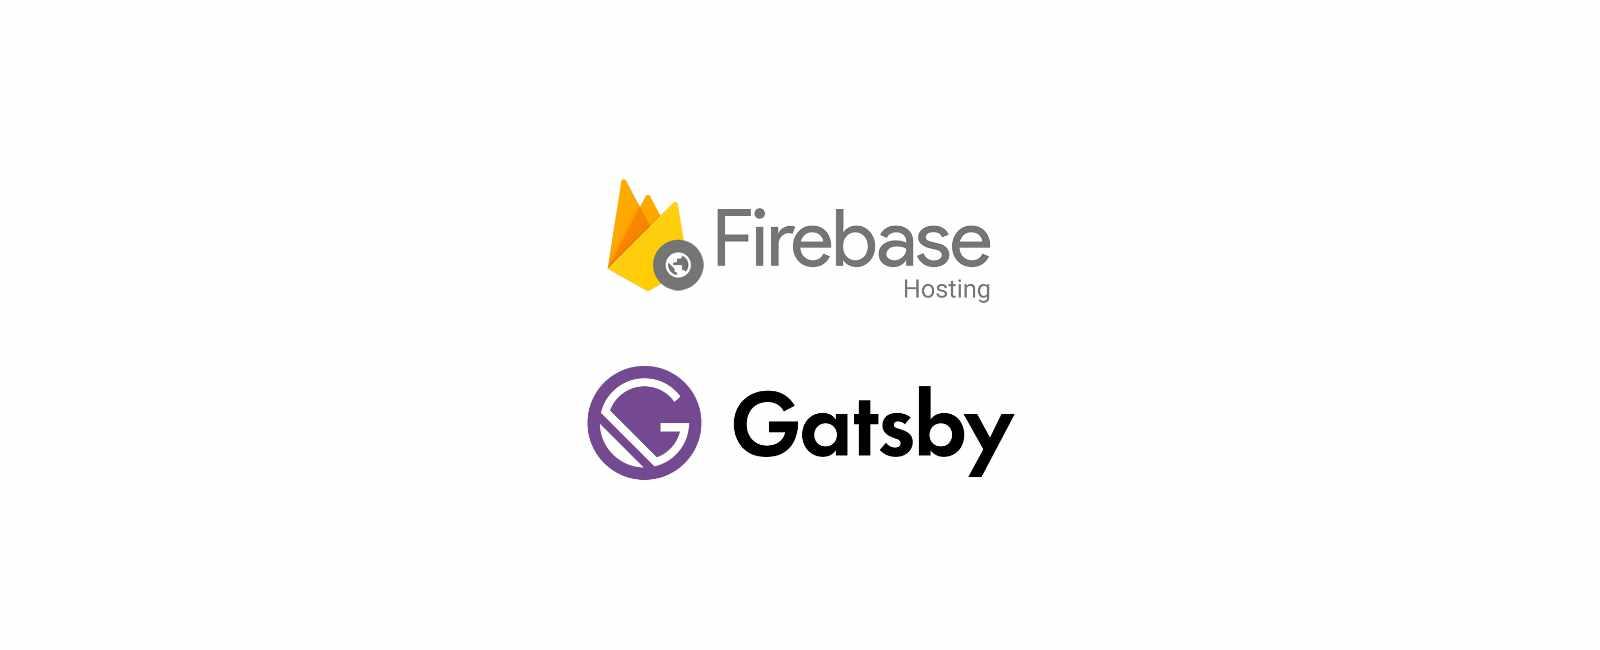 ใช้ Github Actions ทำ Auto Deploy Gatsbyjs ขึ้น Firebase Hosting กันดีกว่า